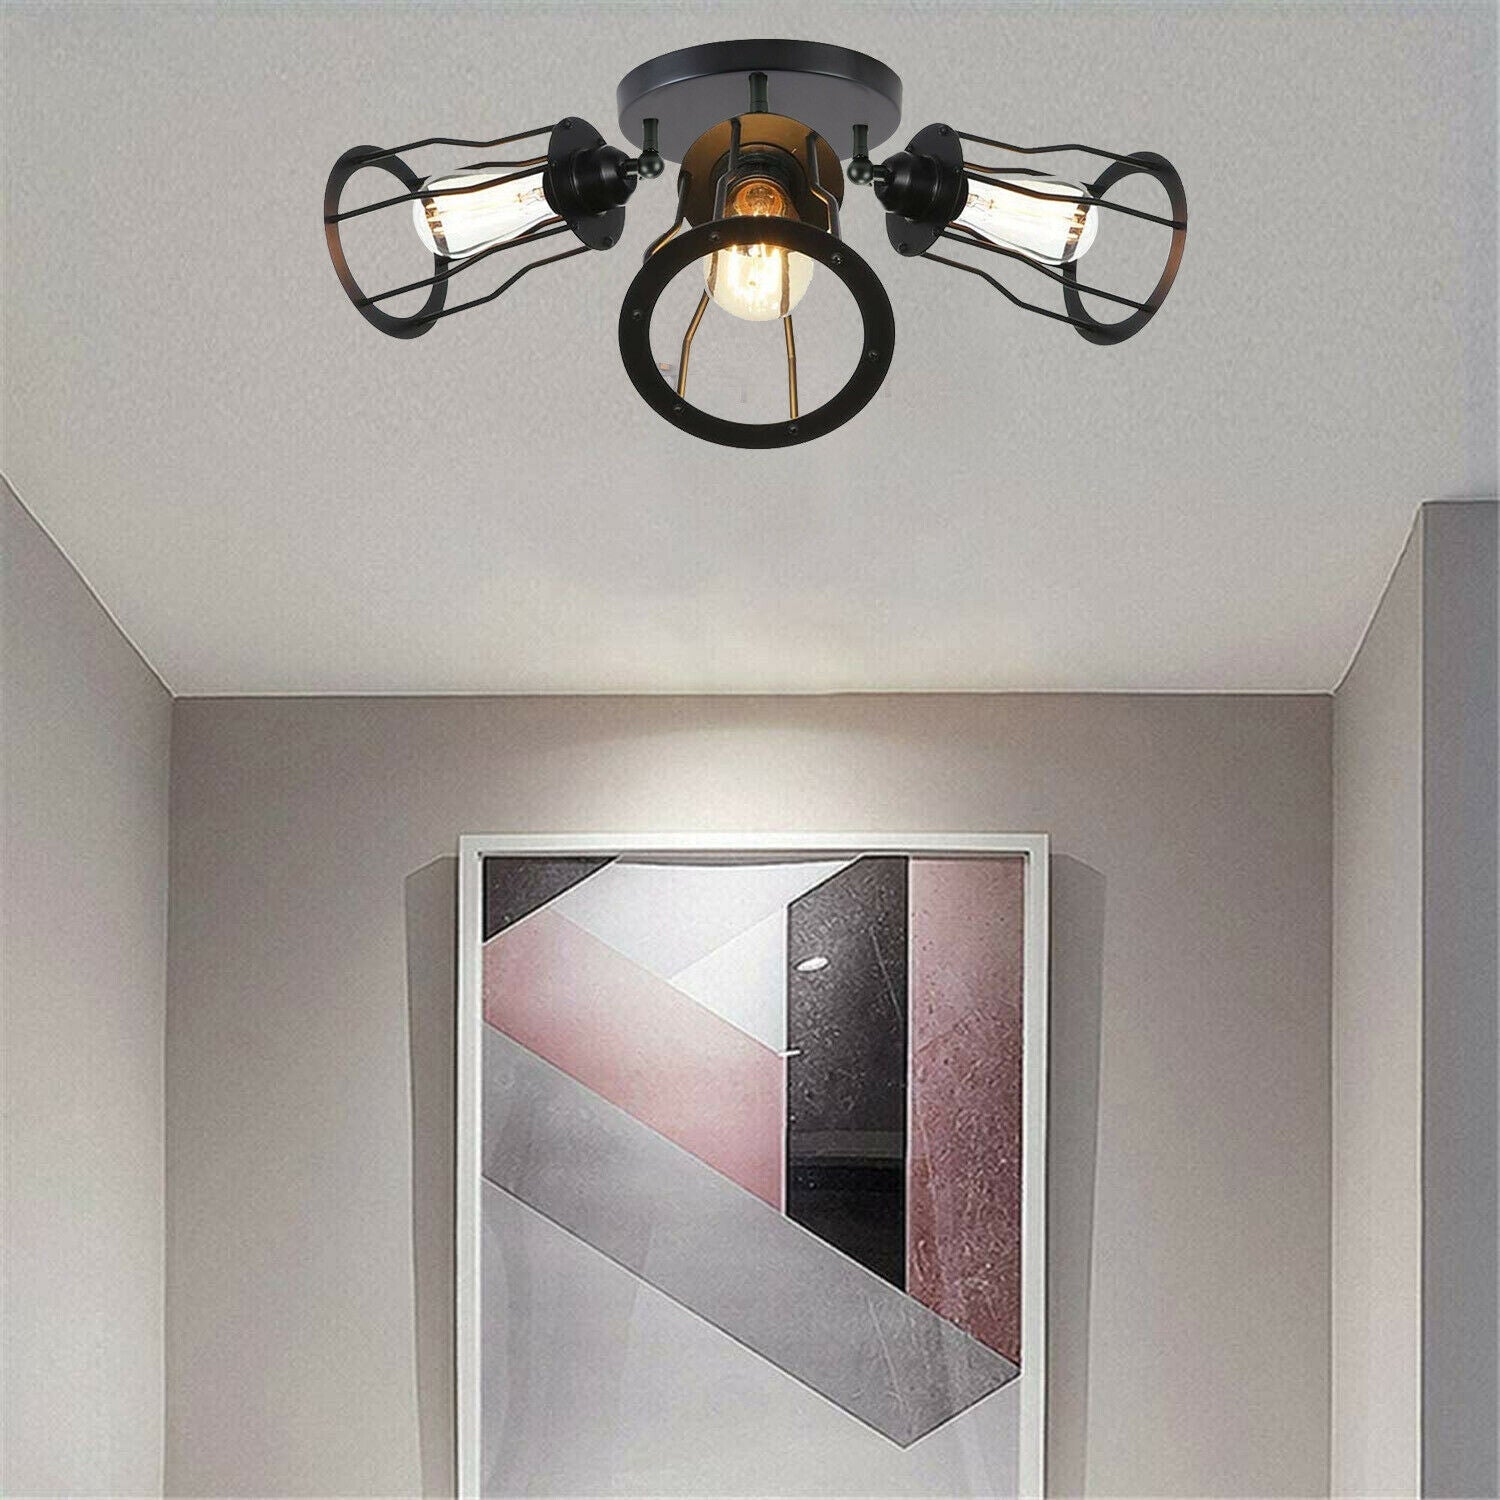 3-Way Black Flush Mount Ceiling Light for foyers